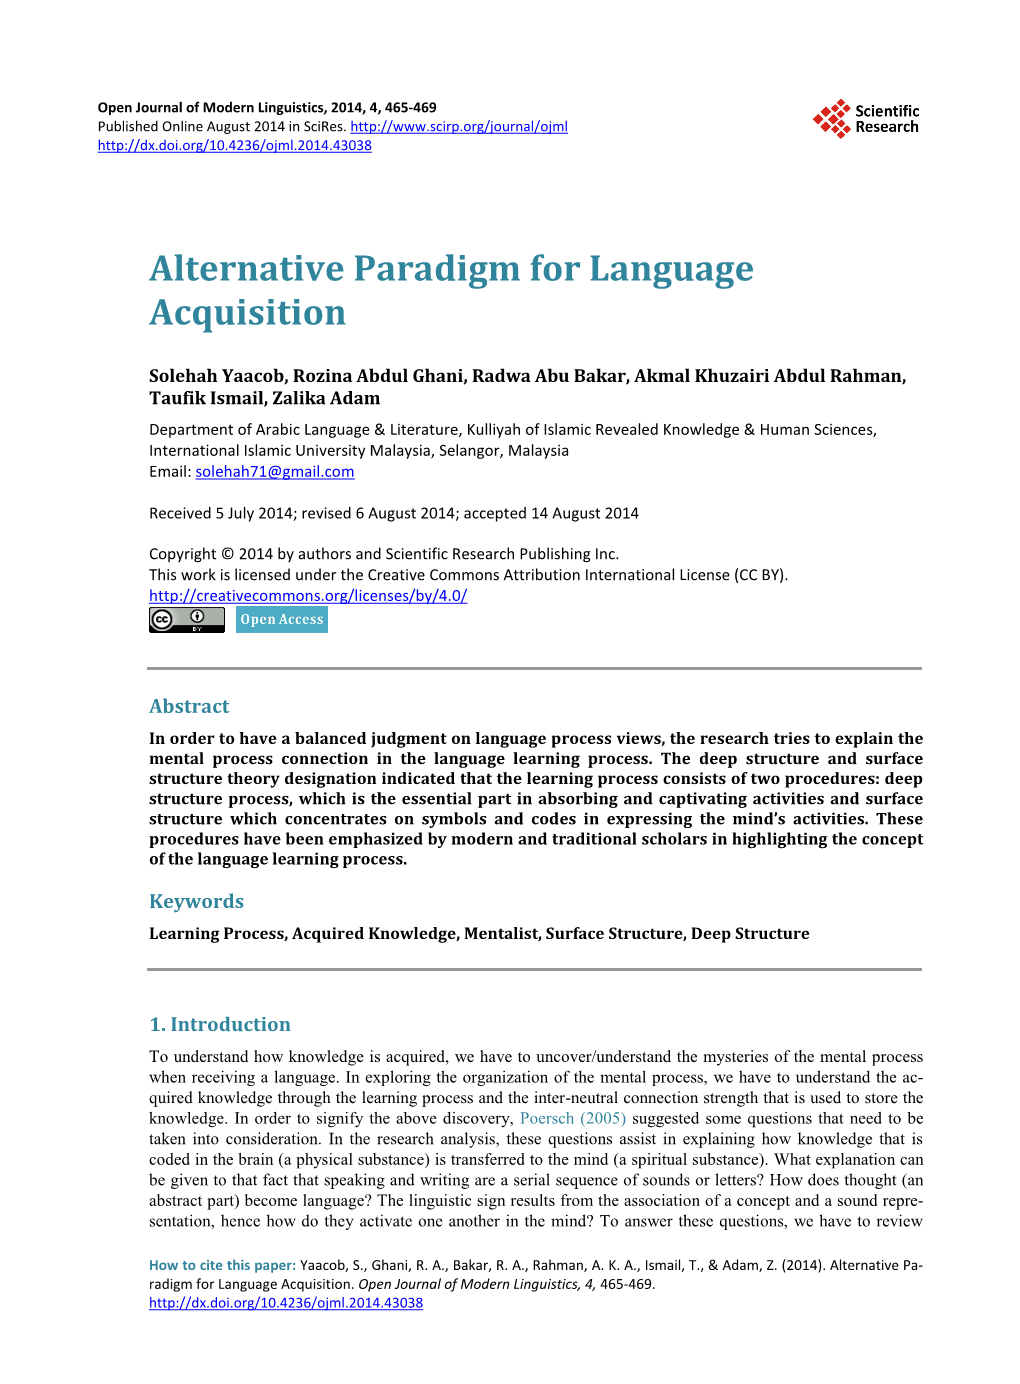 Alternative Paradigm for Language Acquisition